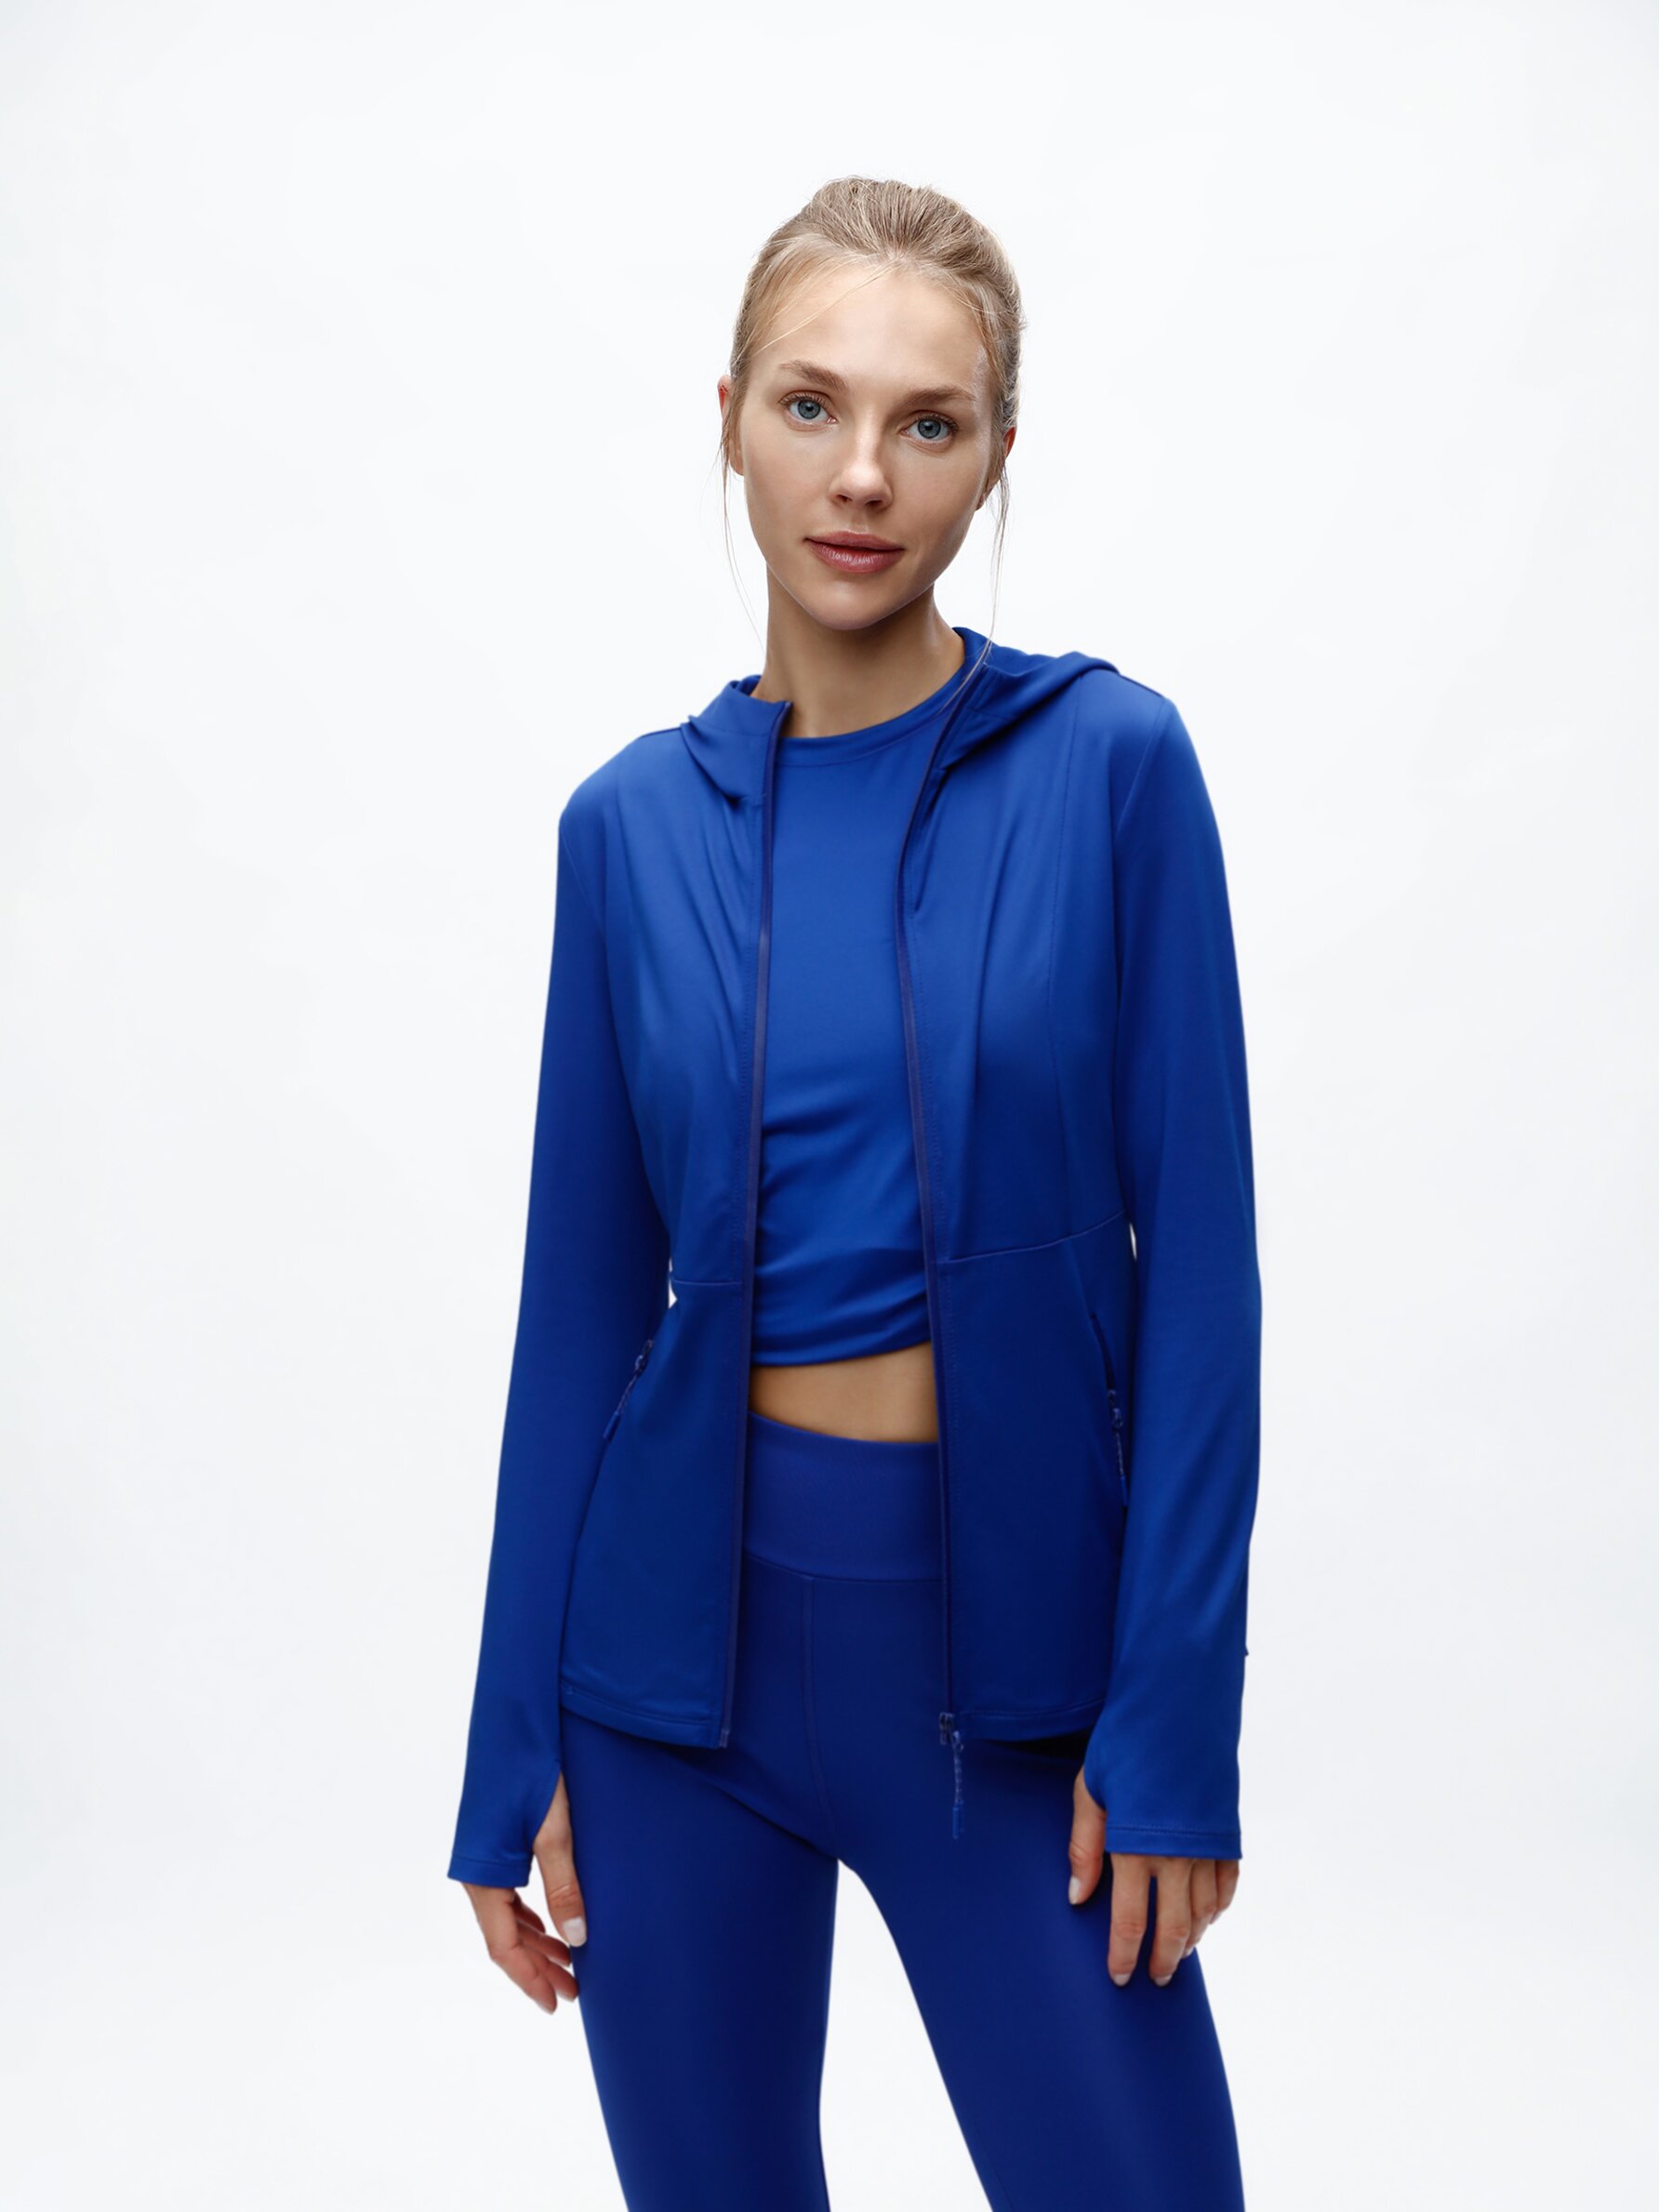 Hooded sports jacket - Jackets - Sportswear - CLOTHING - Woman 